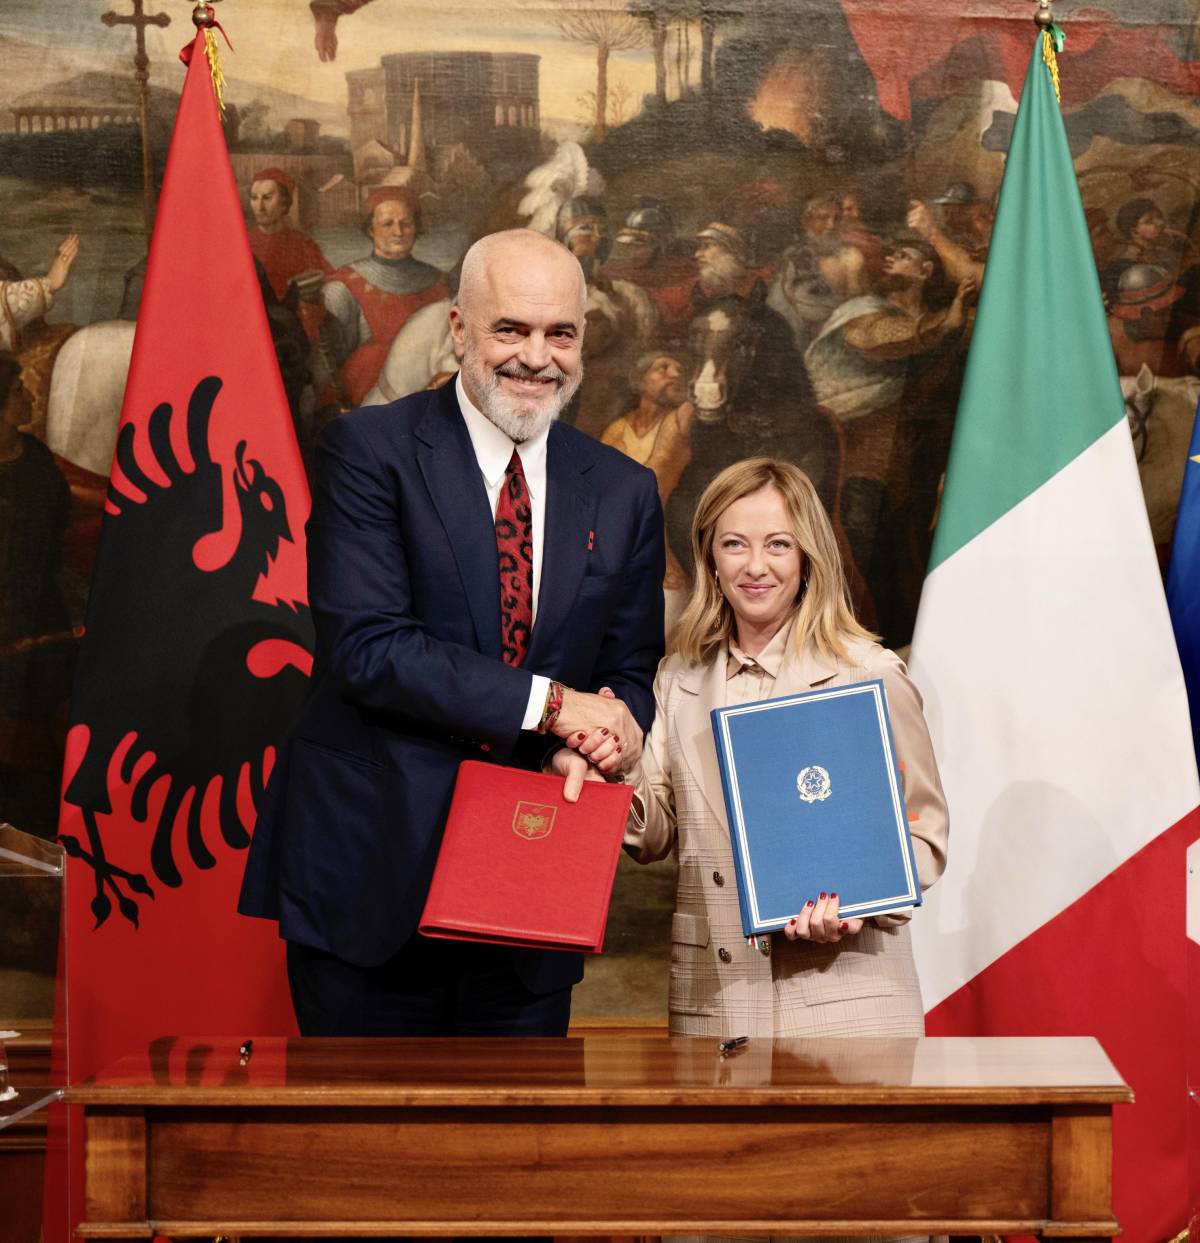 "Non viola i diritti": ora pure l'Ue apre all'accordo Italia-Albania sui migranti